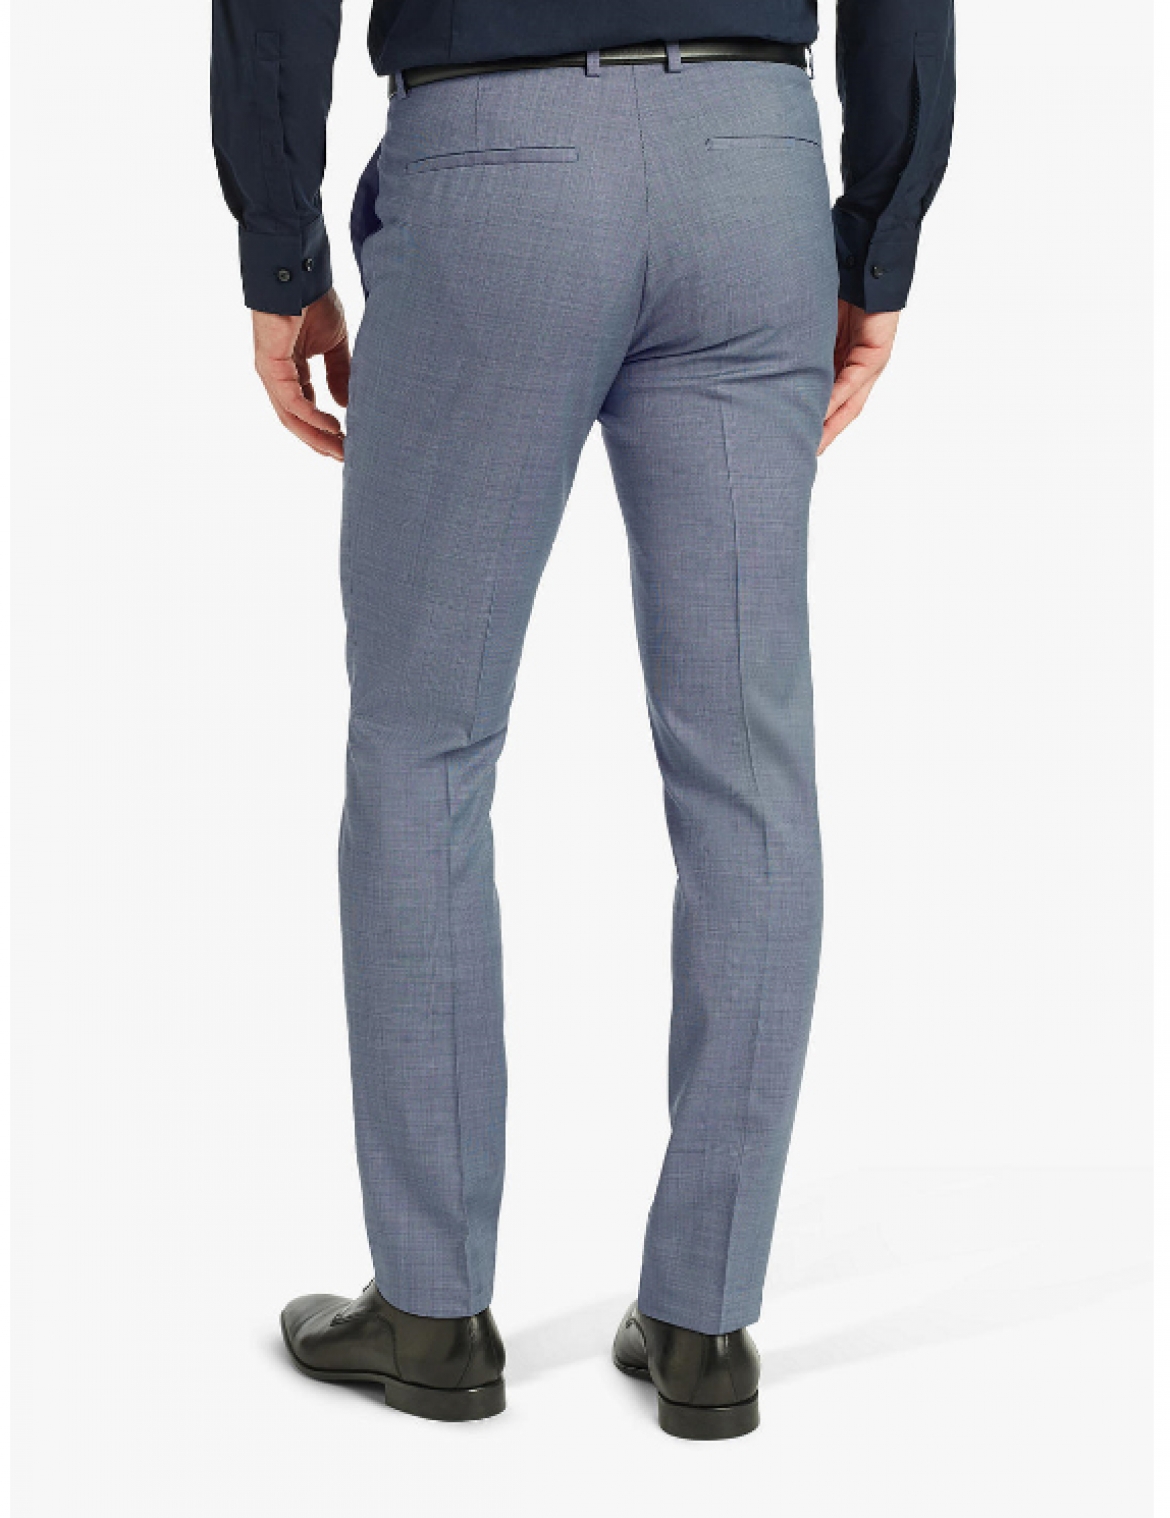 Men's pants, blue 2